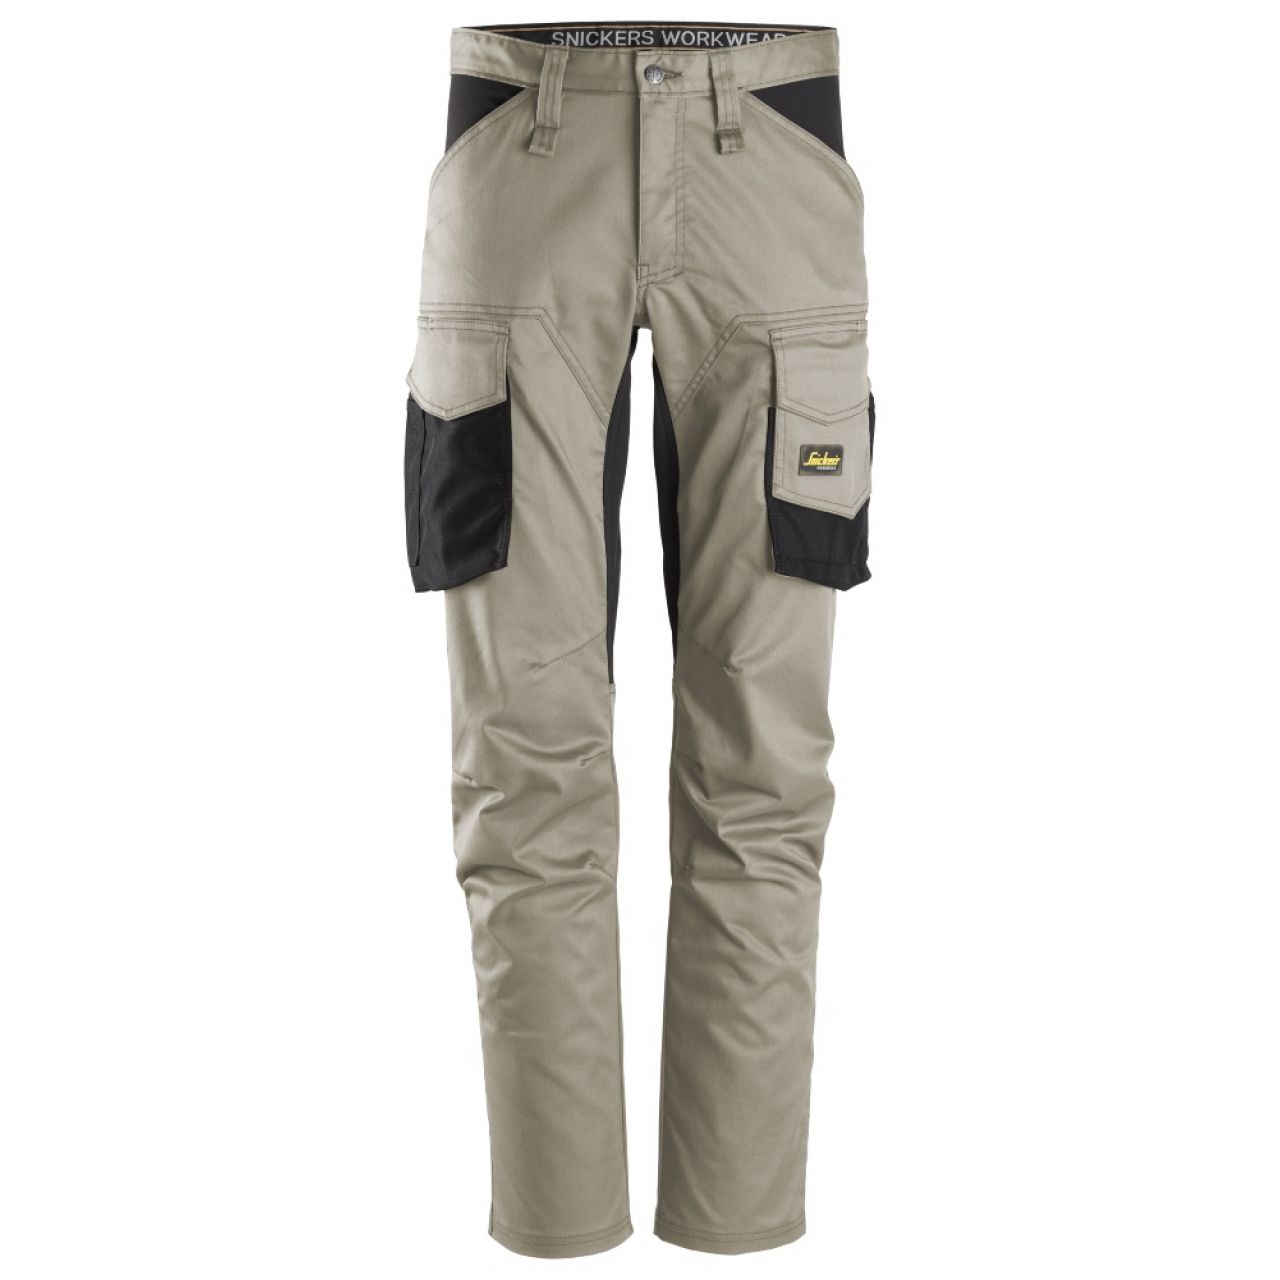 6803 Pantalones largos de trabajo elásticos sin bolsillos para las rodilleras AllroundWork beige-negro talla 148